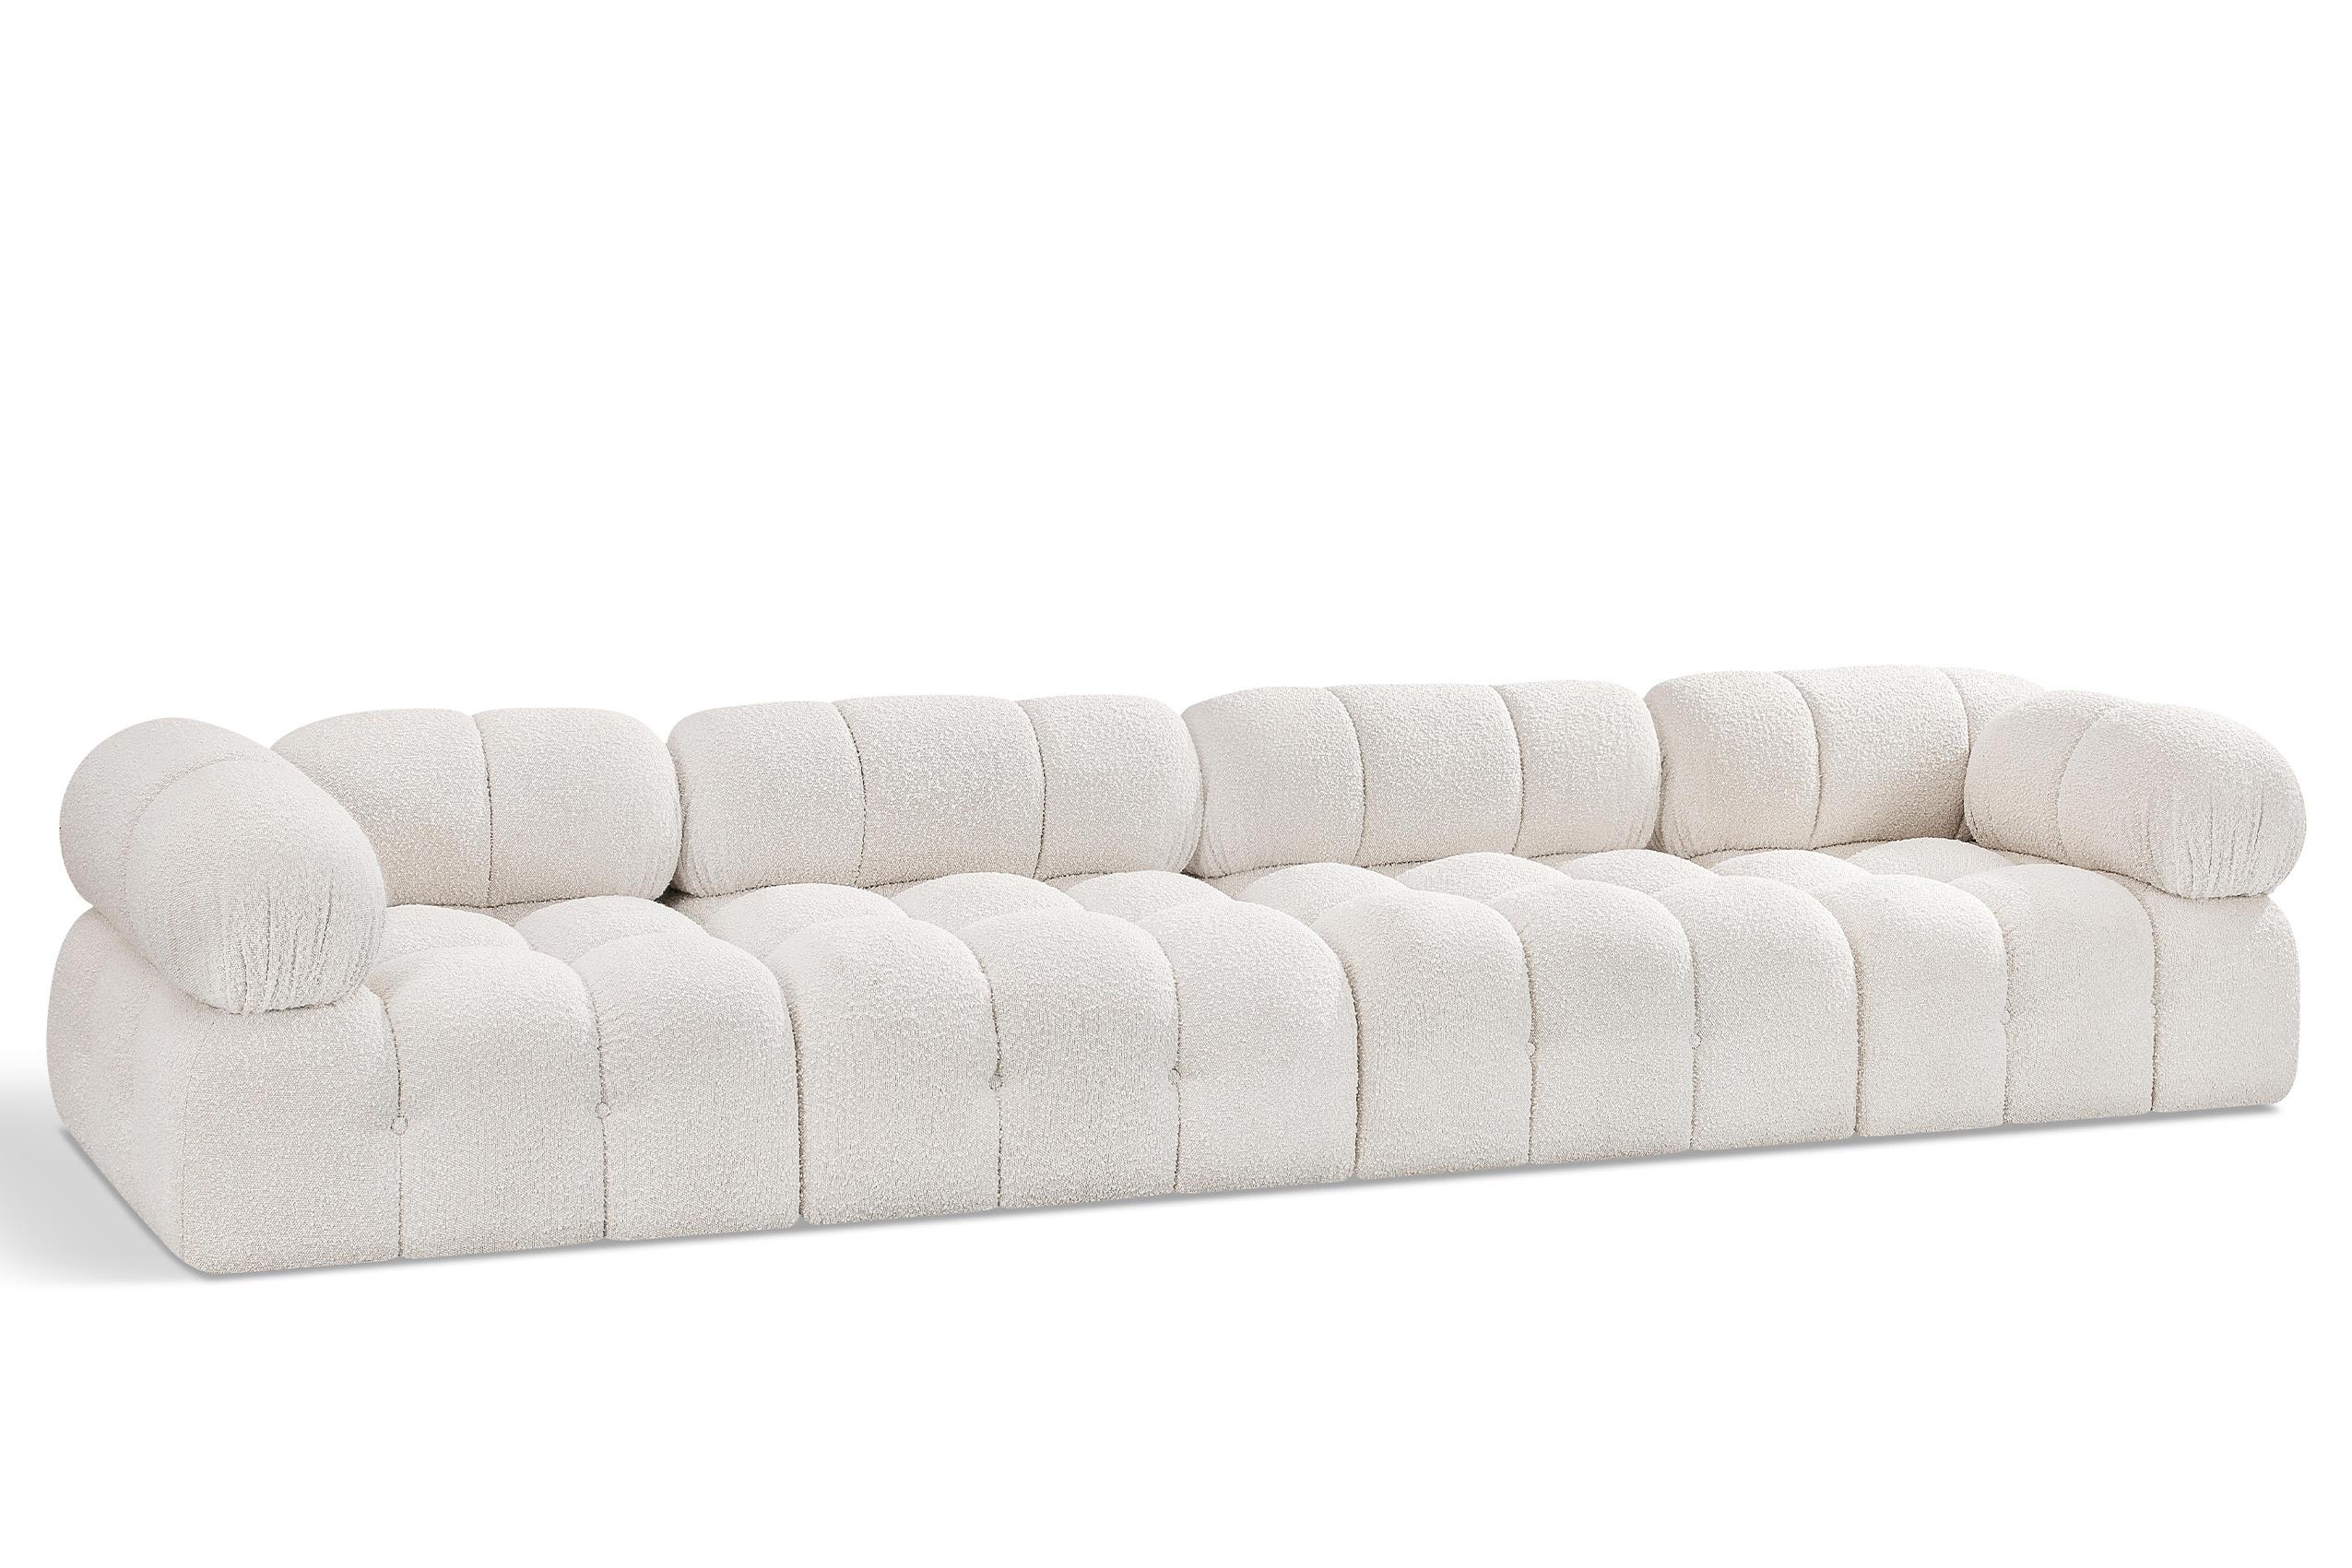 Contemporary, Modern Modular Sofa AMES 611Cream-S136A 611Cream-S136A in Cream 